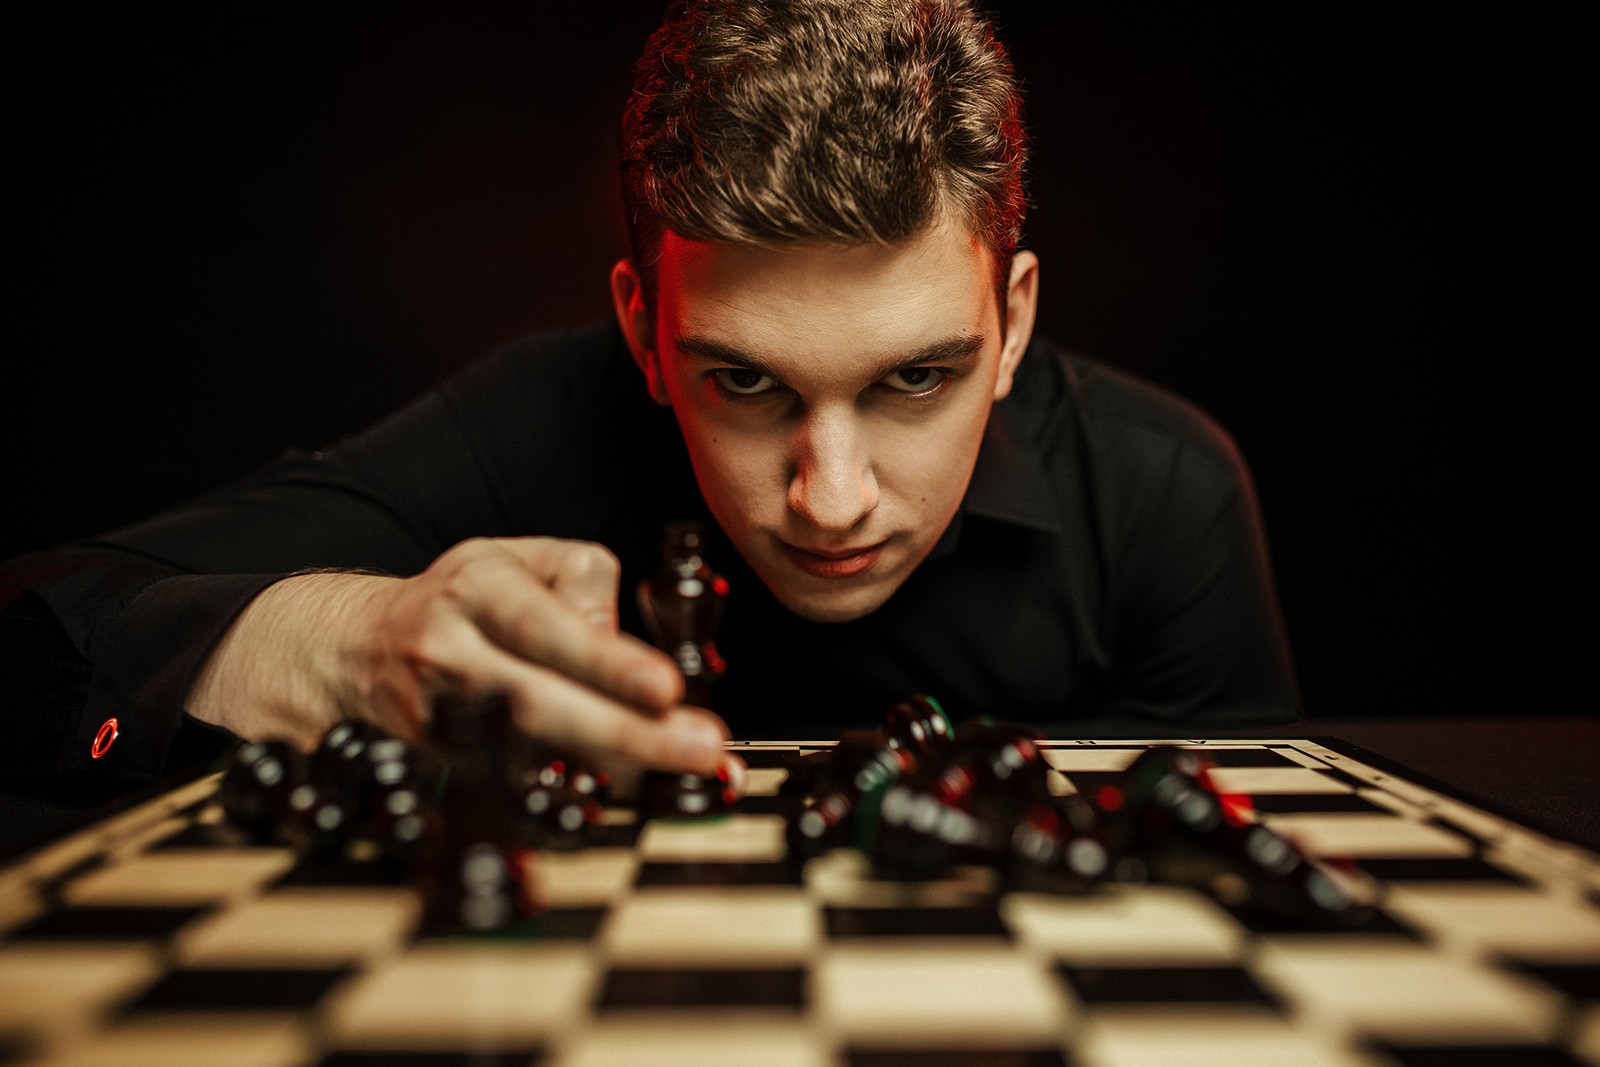 Każdy topowy gracz ma do dyspozycji serwery klasy enterprise – wywiad z Janem-Krzysztofem Dudą, szachowym arcymistrzem